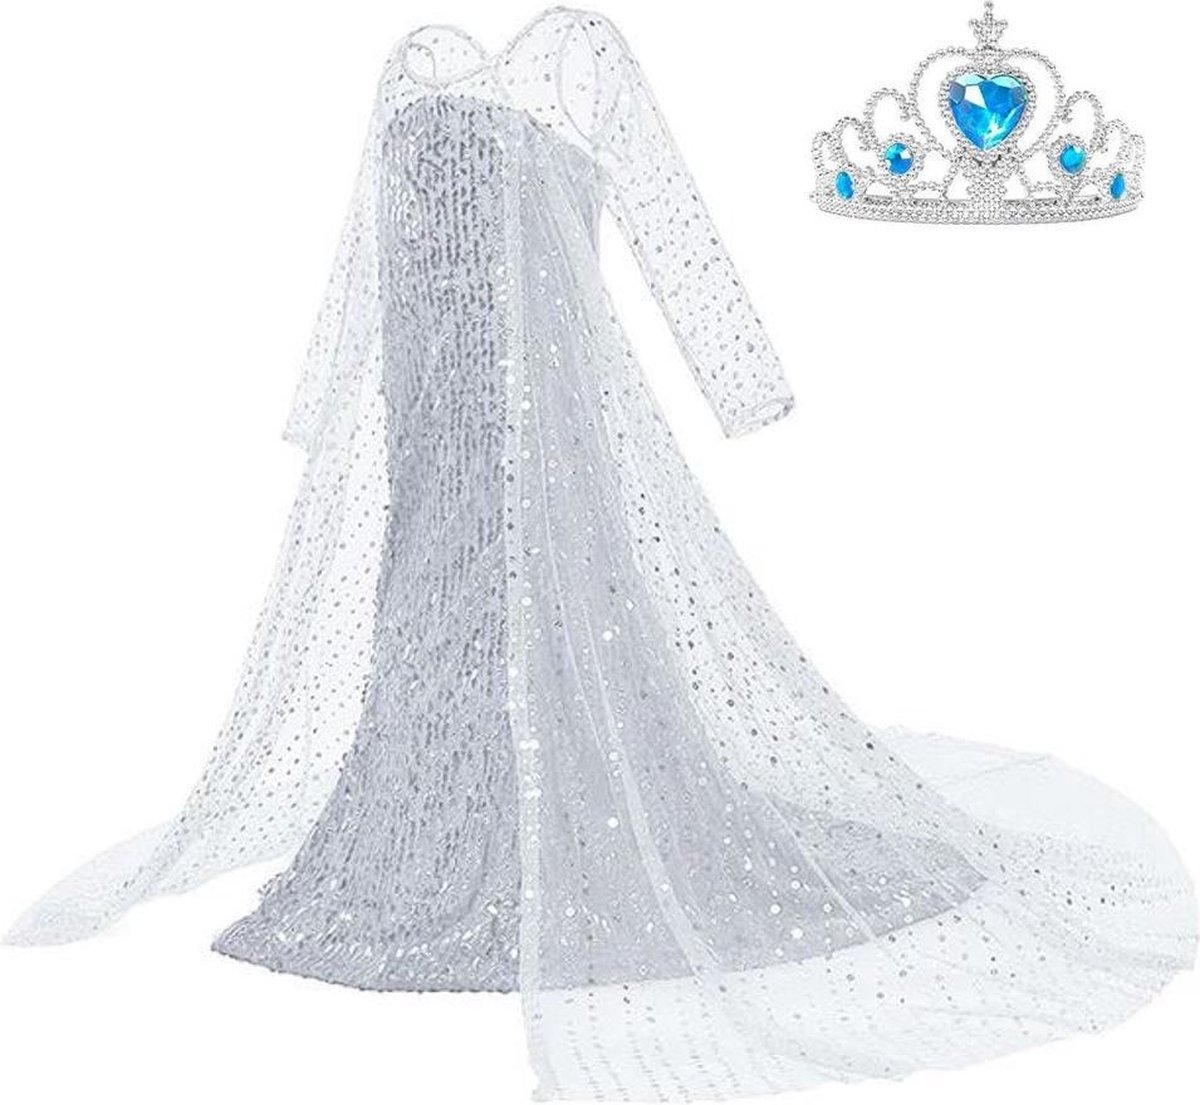 Frozen 2 Elsa jurk IJskoningin Deluxe met lange sleep 128-134 (140) + kroon Prinsessen jurk verkleedkleding